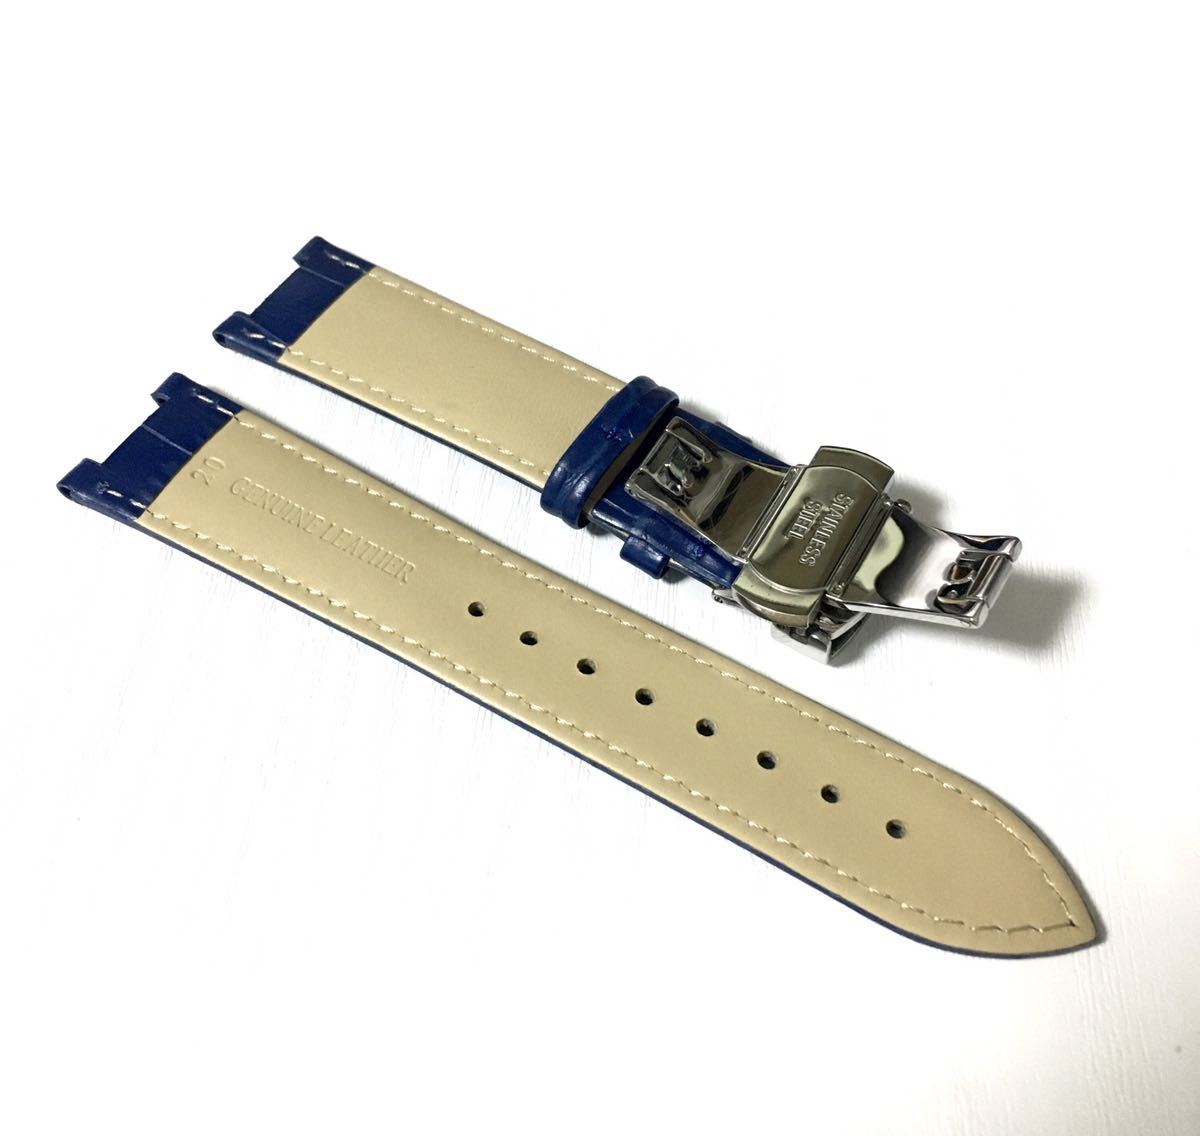 20mm 腕時計 凹型 革 レザーベルト ブルー 青 Dバックル 防水【対応